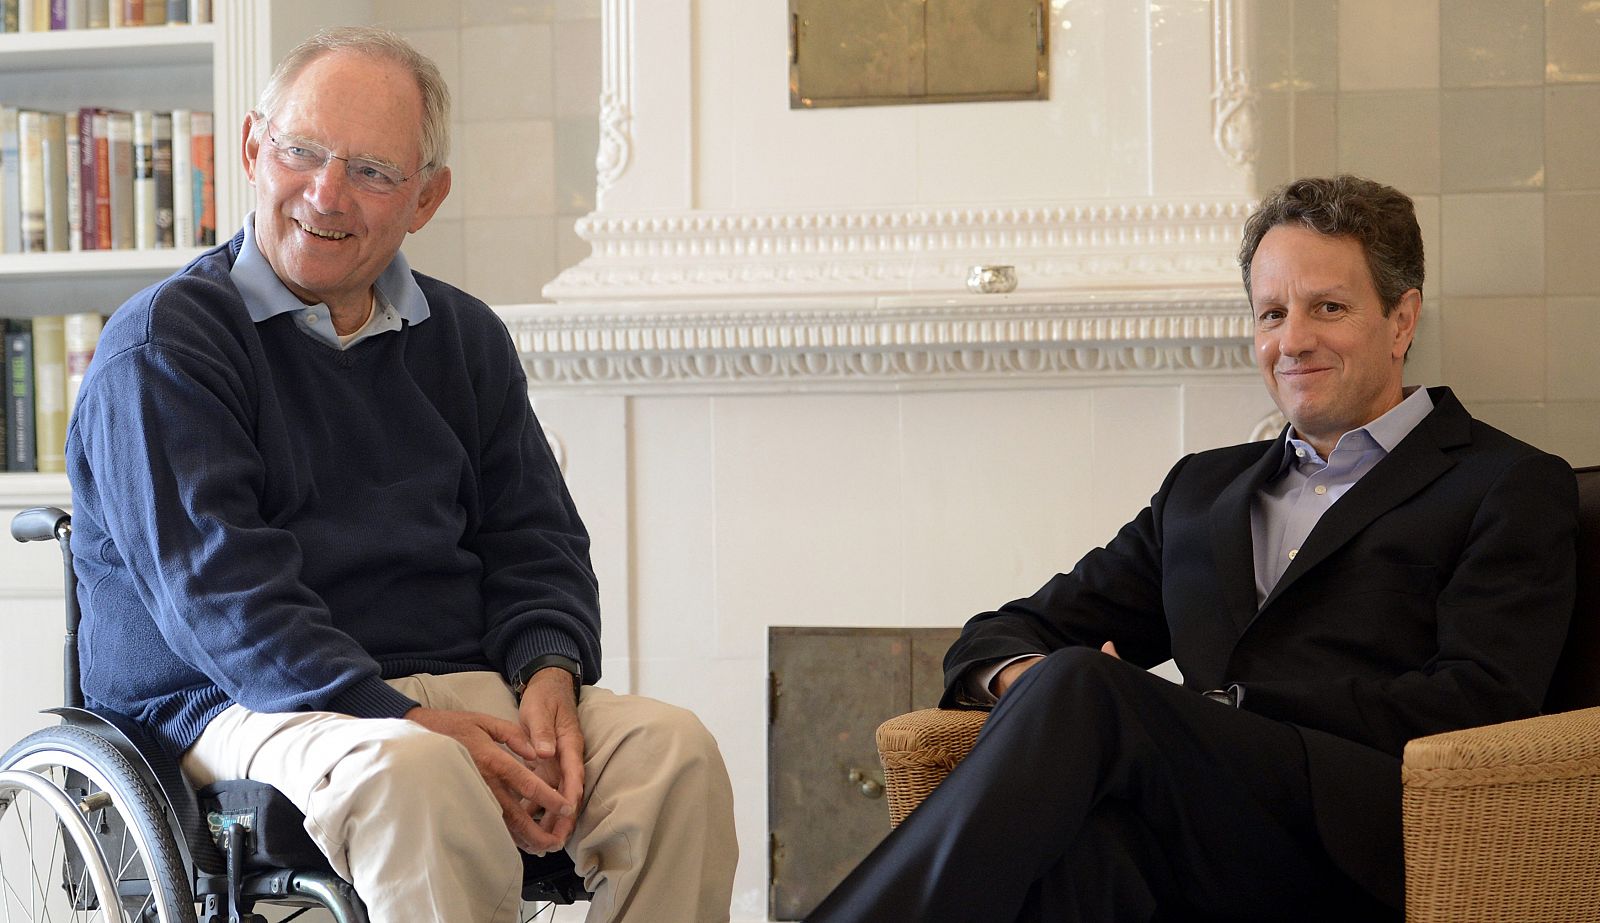 Reunión de los máximos responsables económicos de los gobiernos de Alemania y EE.UU, Wolfgang Schaeuble (izquierda) y Timothy Geithner.